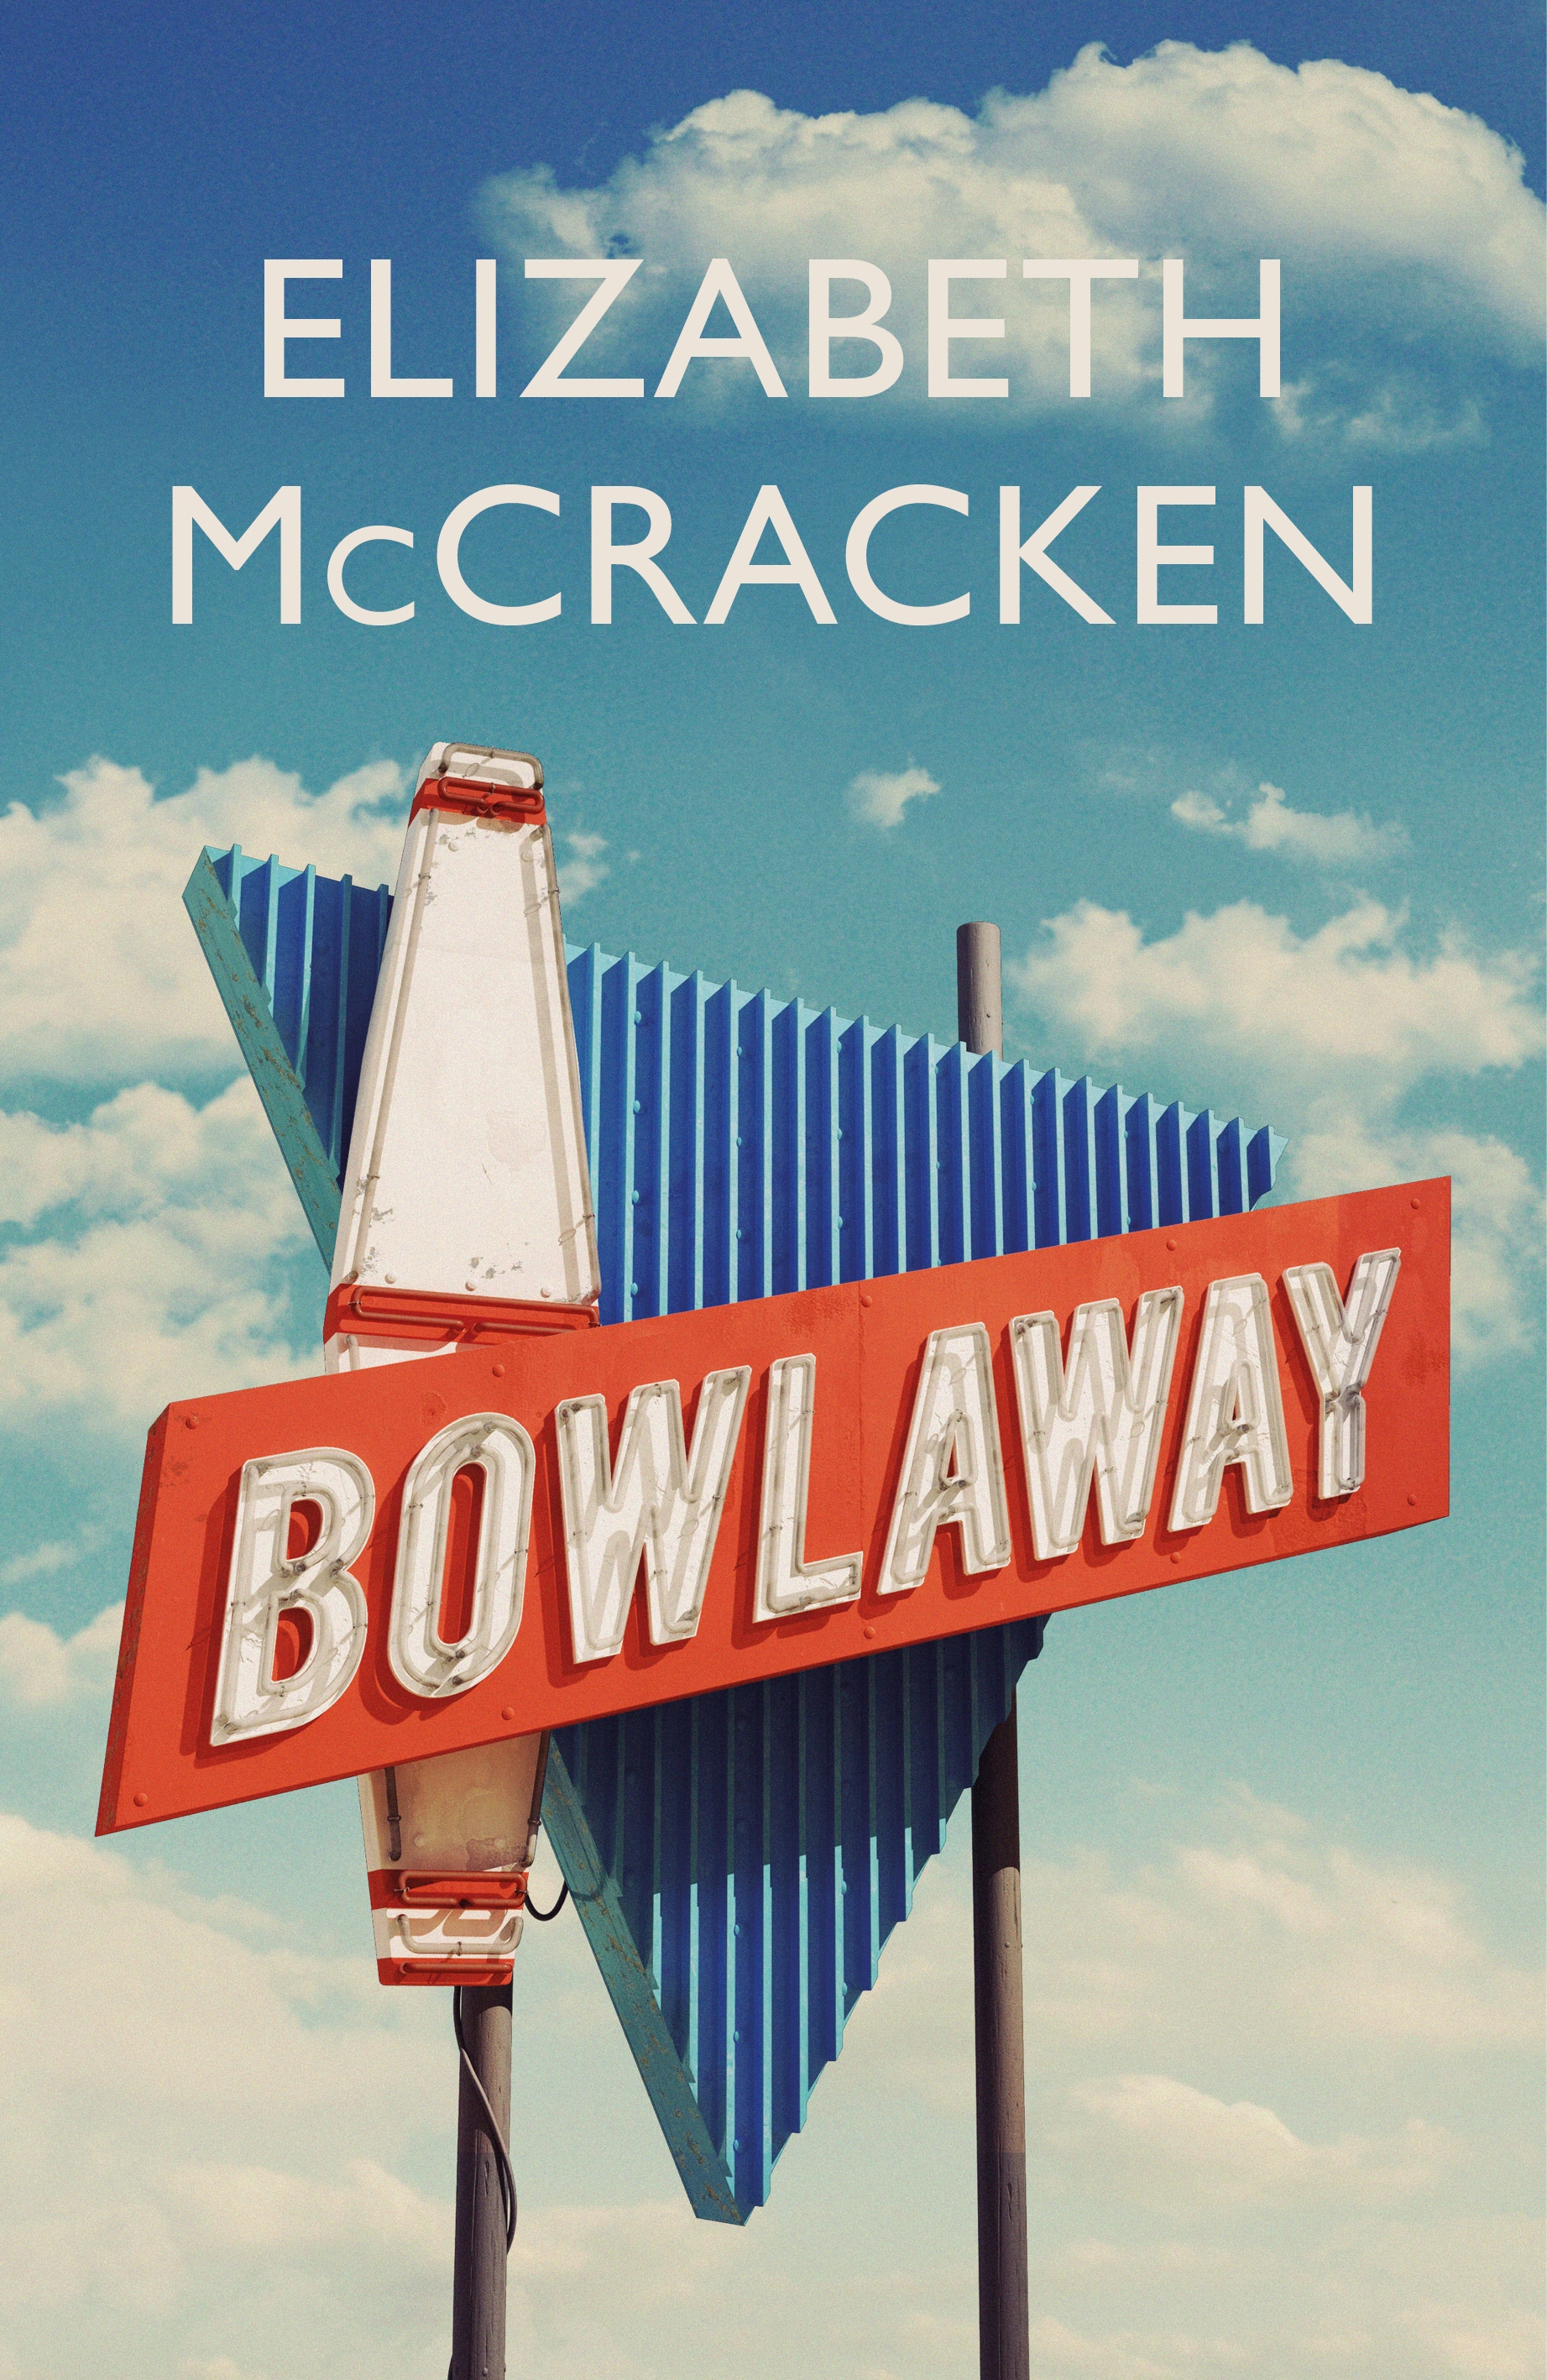 Book “Bowlaway” by Elizabeth McCracken — March 14, 2019